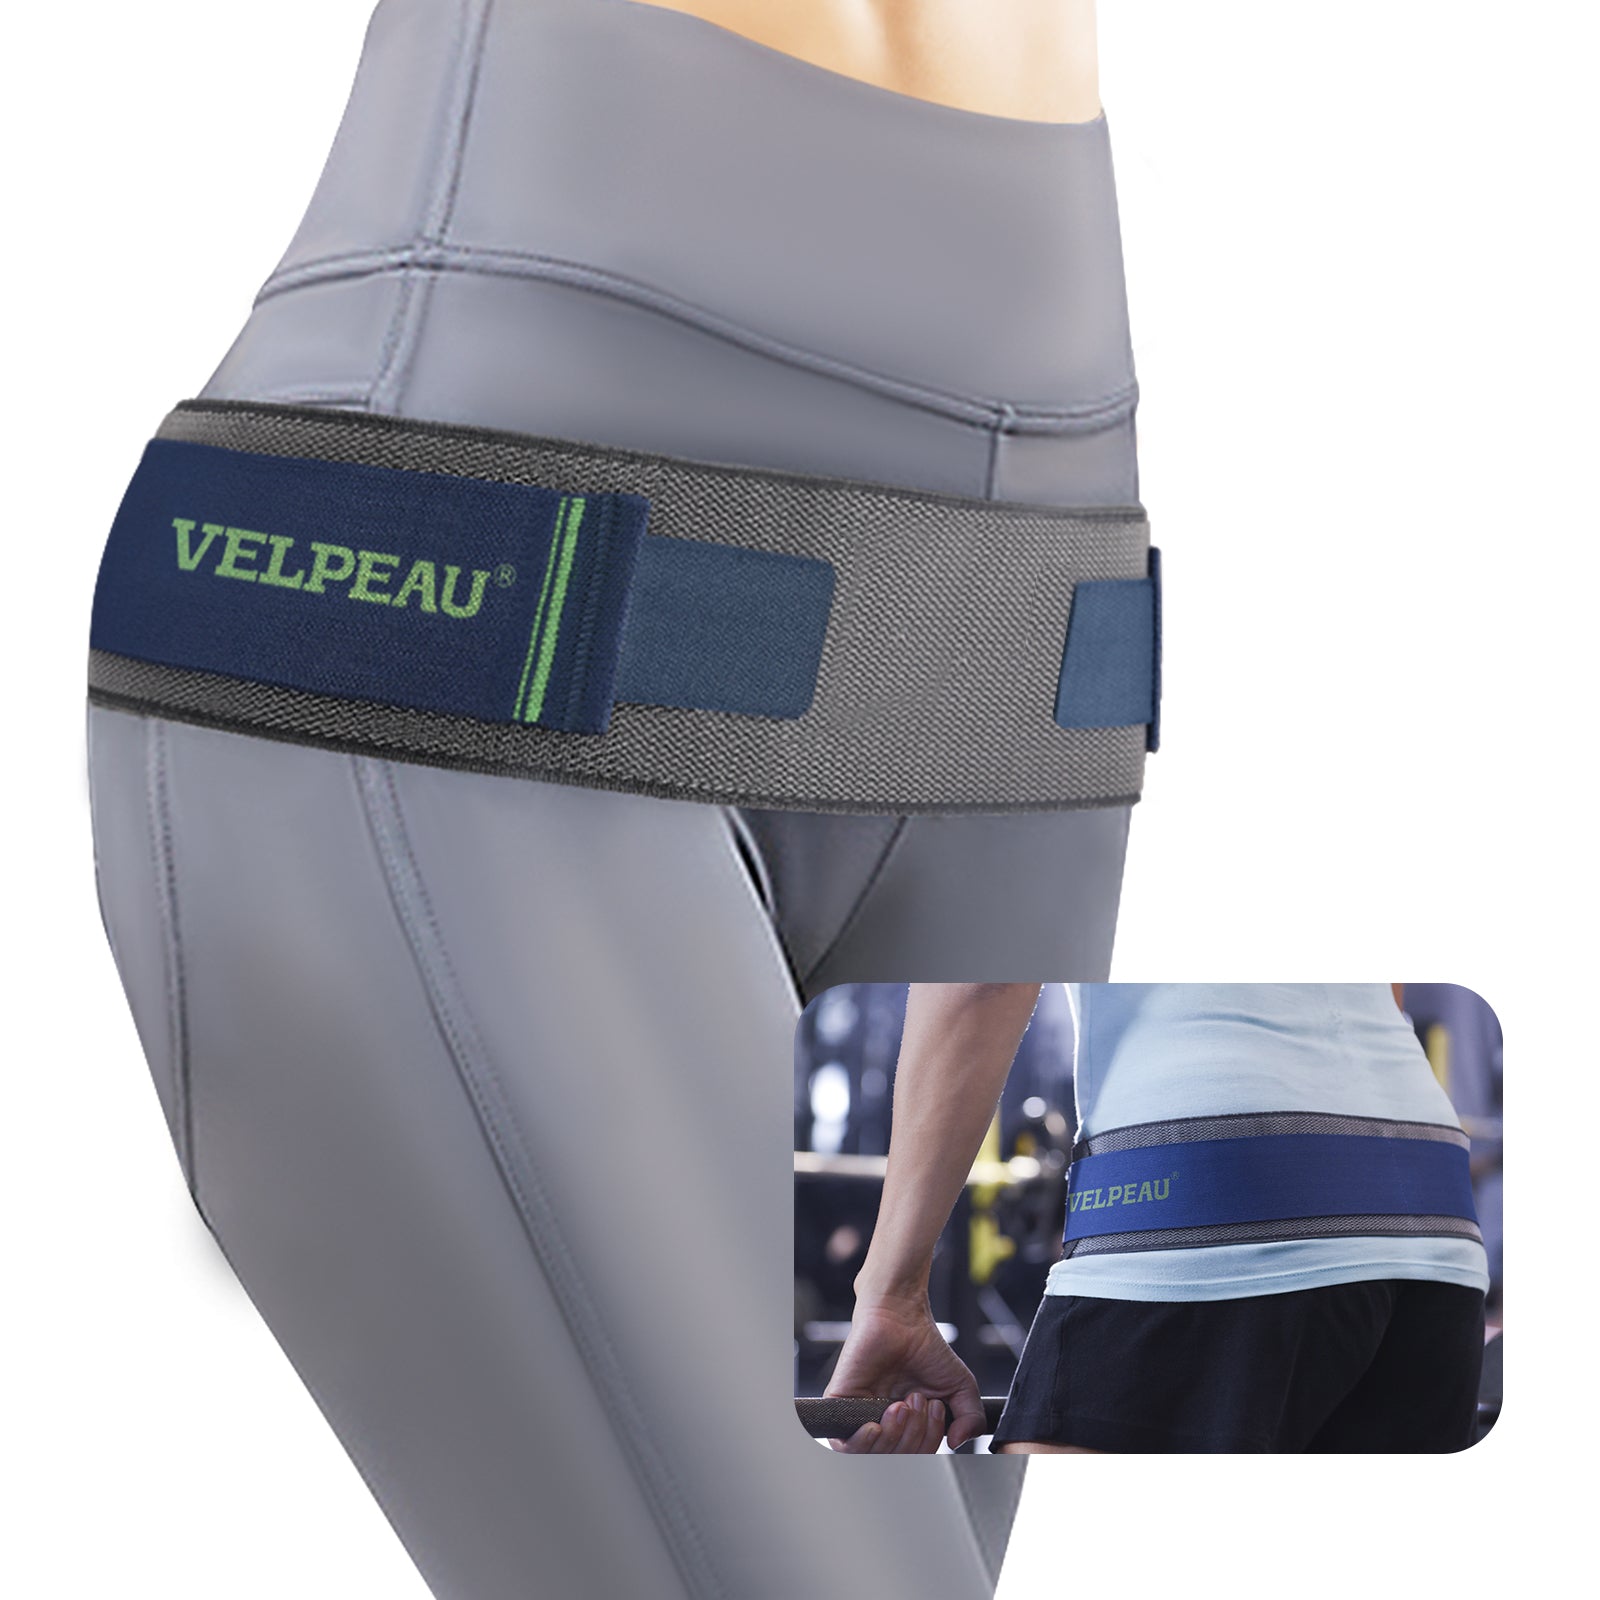 VP1001 VELPEAU Sacroiliac Belt Si Belt Support for Lower Back